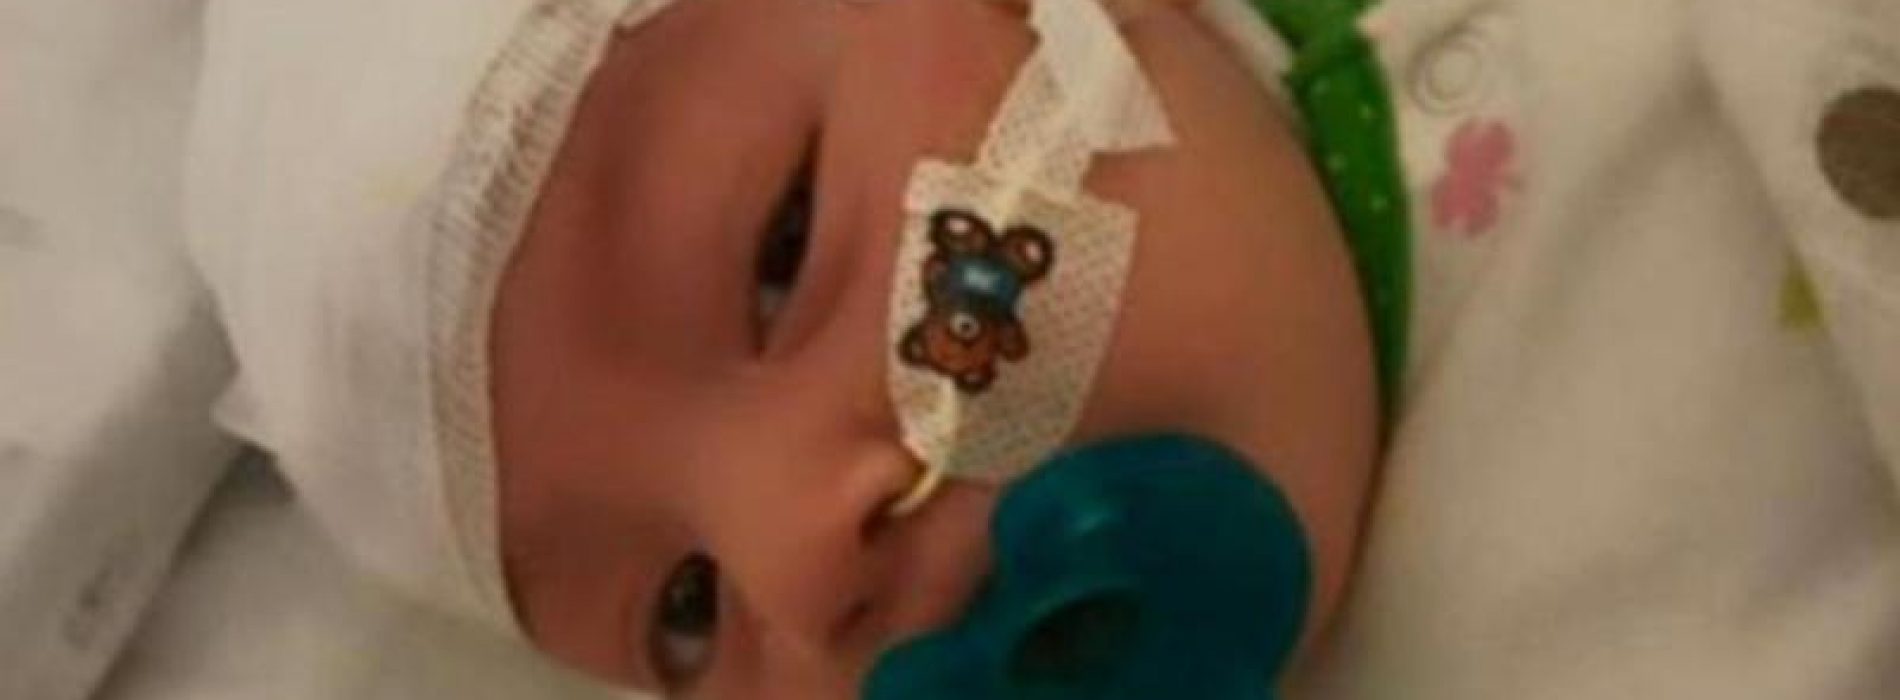 VIDEO: Baby met zeldzame vorm van epilepsie behandeld met hennepolie